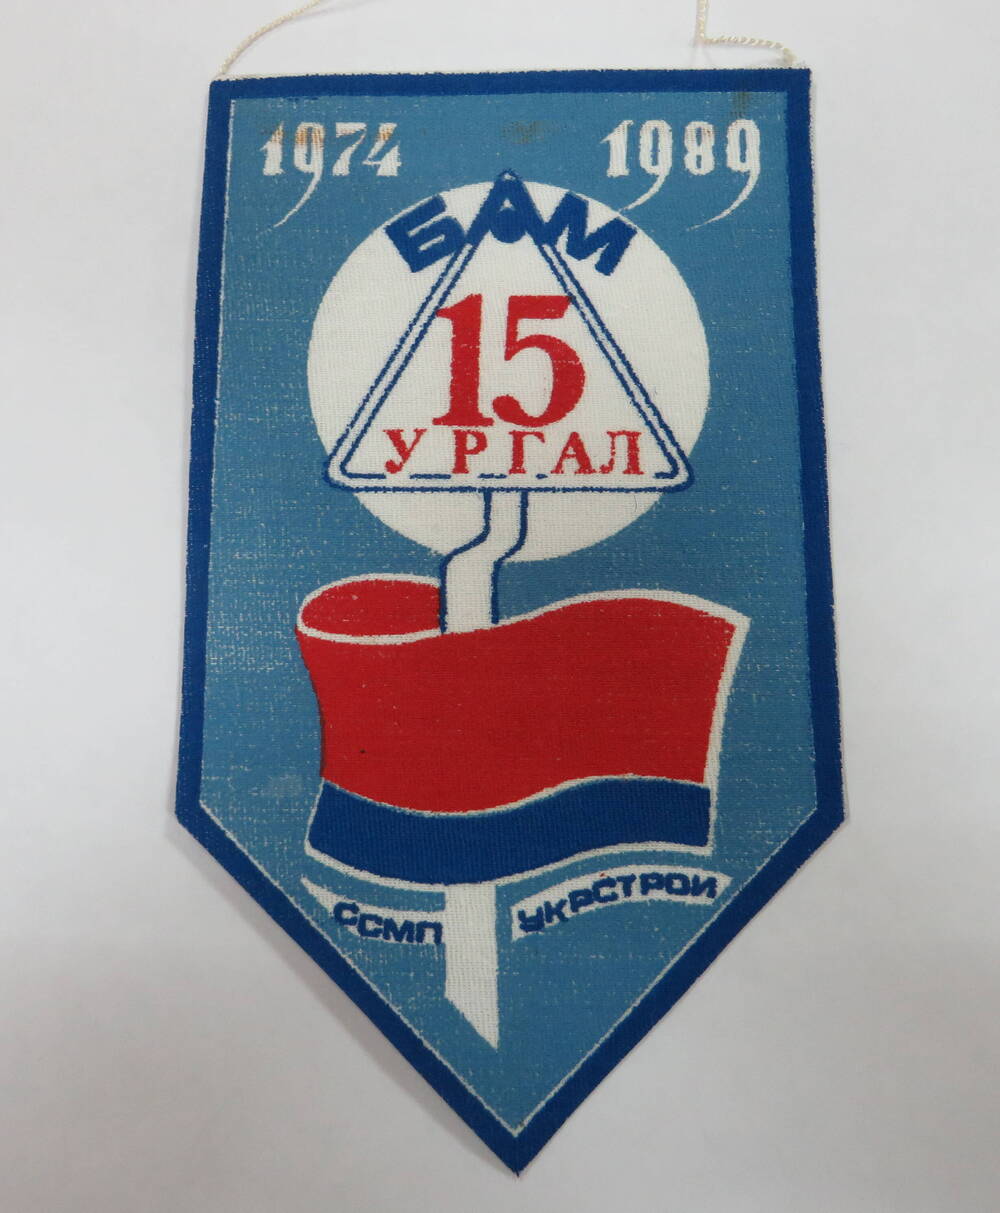 Вымпел БАМ 15 лет Ургал 1974 - 1989